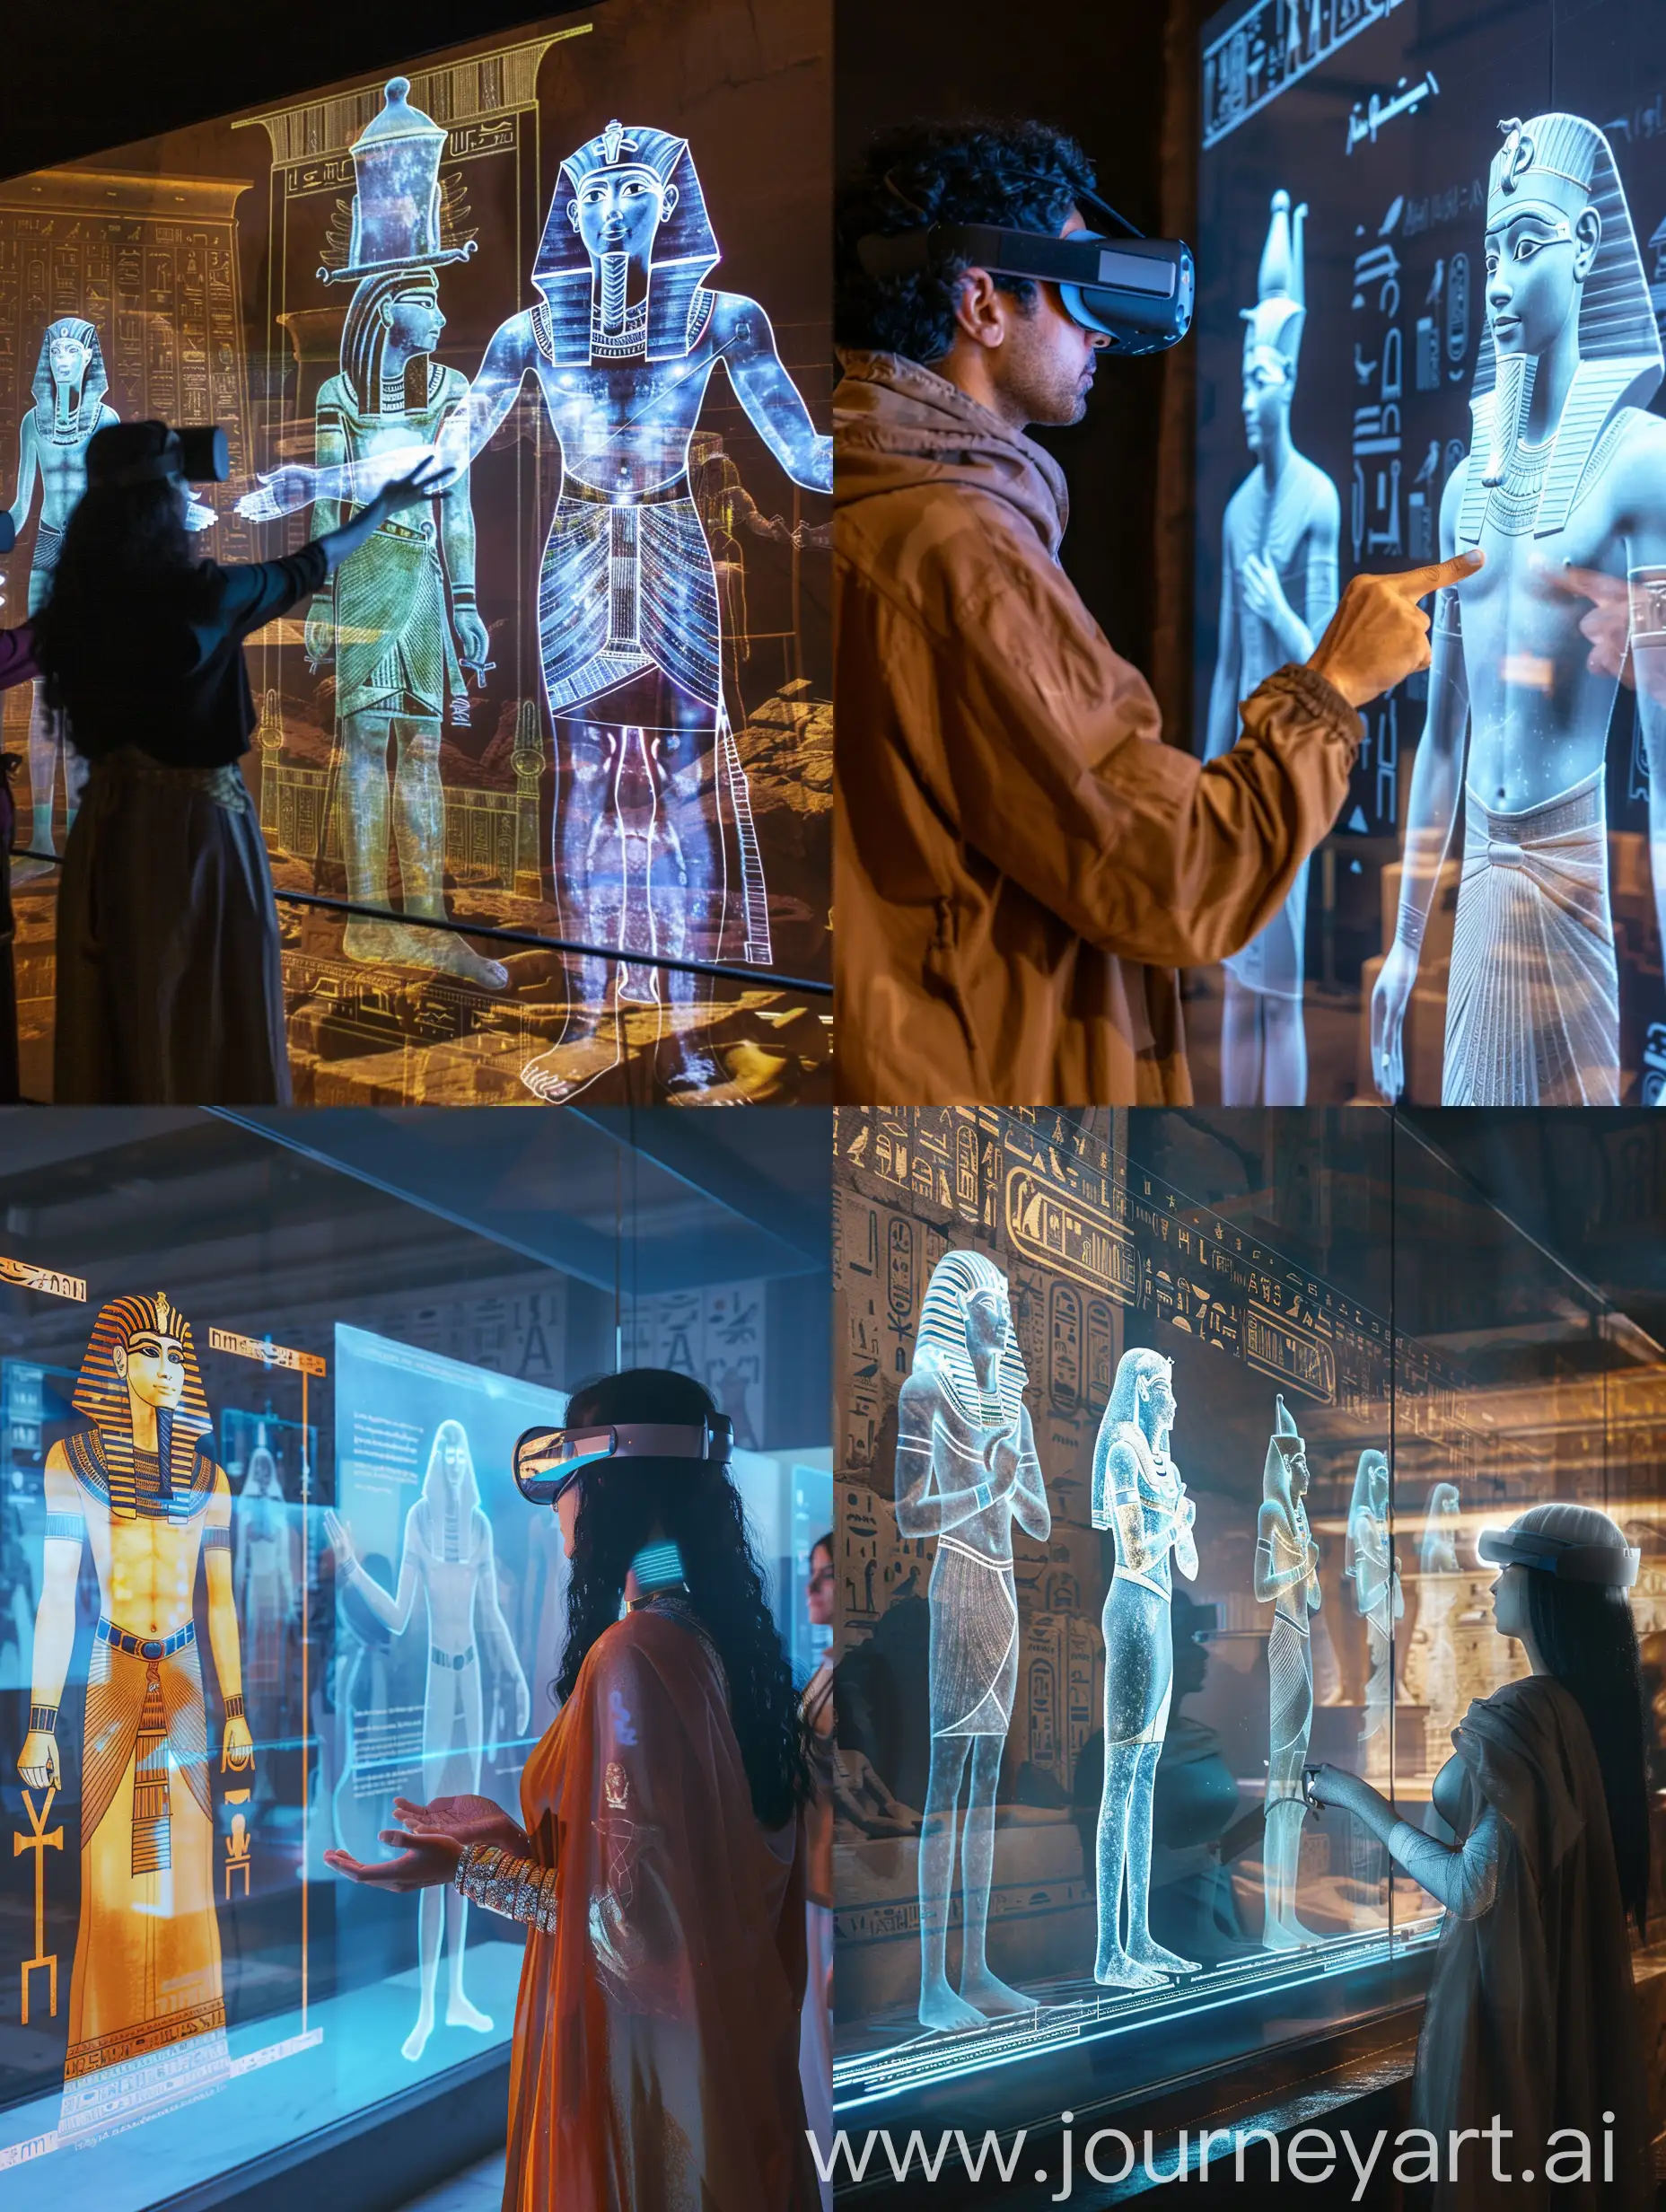 مركز سياحى عبارة عن  رحلة سياحة باستخدام الواقع الافتراضى لعرض معالم مصر ع هيئة افاتار بالاضافة لشخصيات تاريخية باستخدام تقنية الهولوجرام
